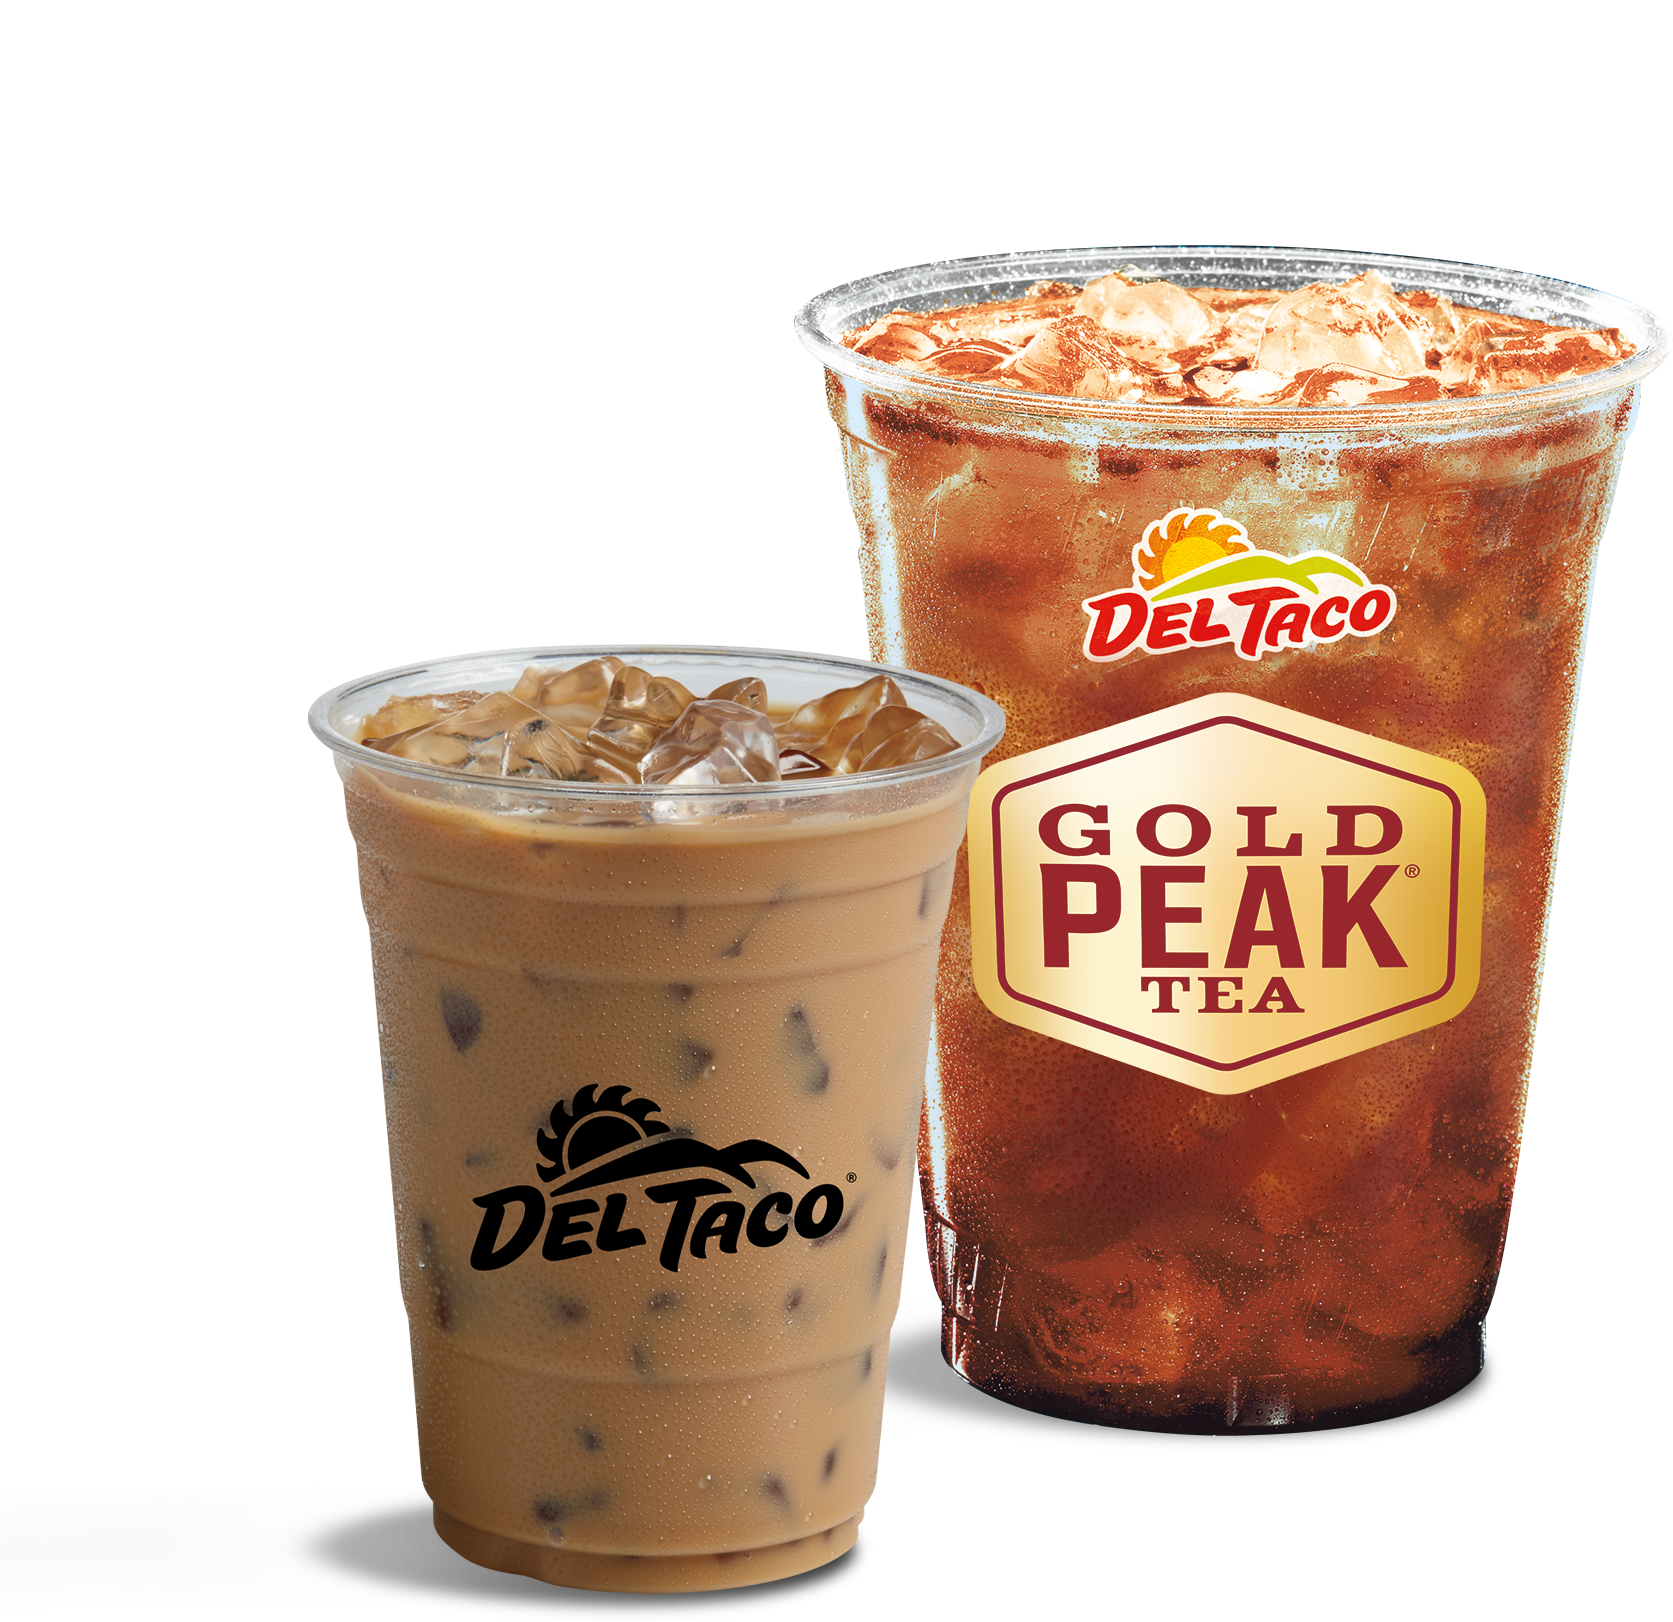 Regular Iced Coffee and Medium Brewed Iced Tea